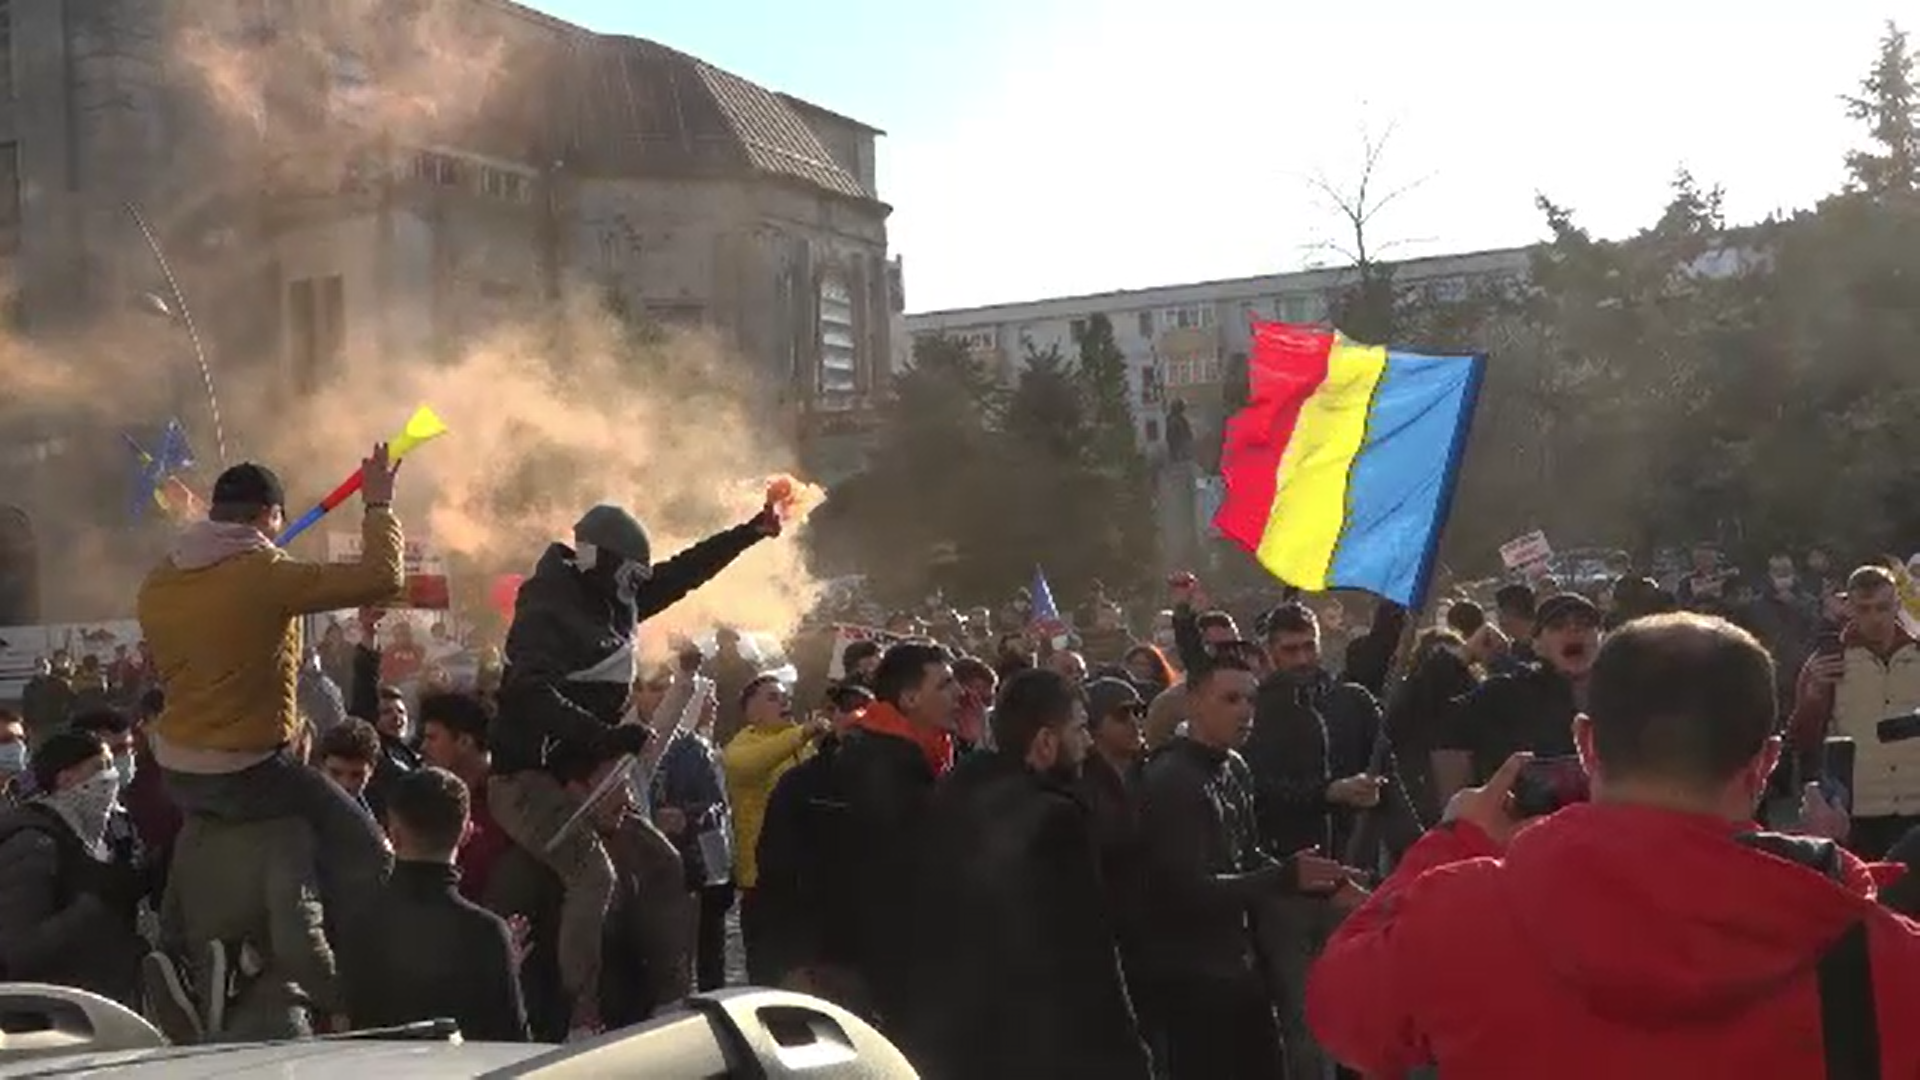 Proteste în 70 de localități din țară. Petarde aruncate în jandarmi la Galați, violențe la București